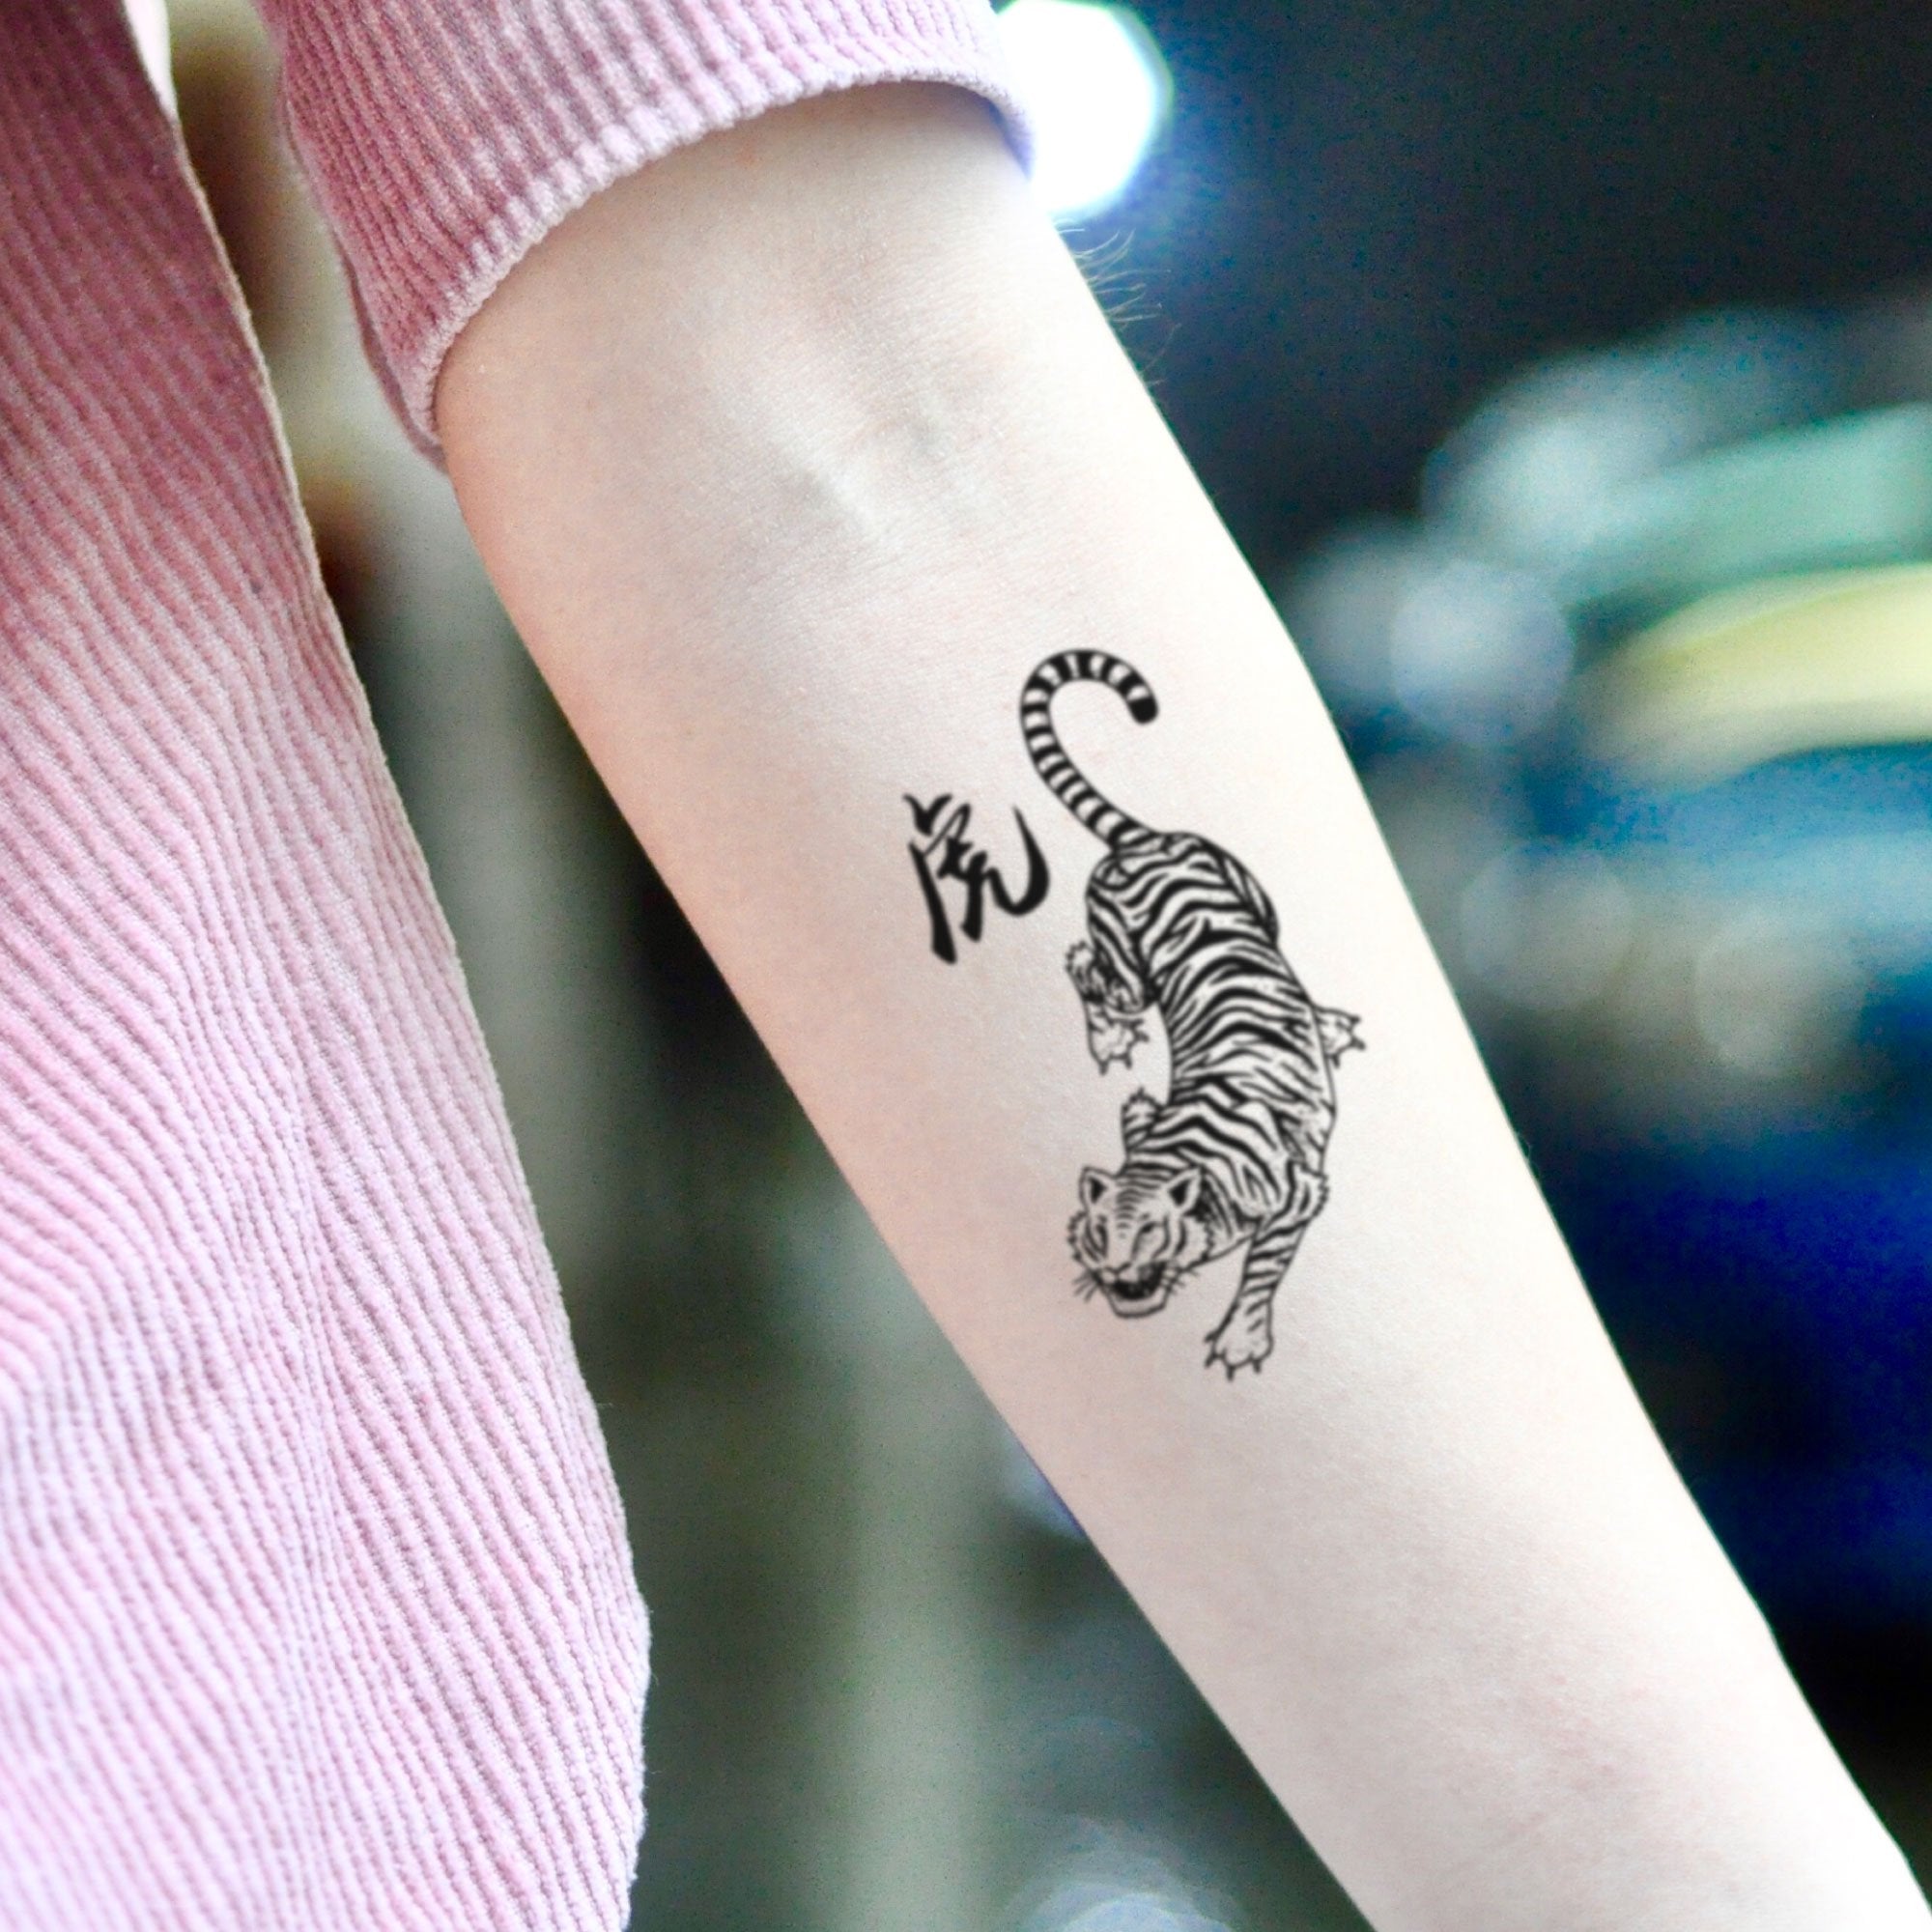 tiger tattoo arm designs